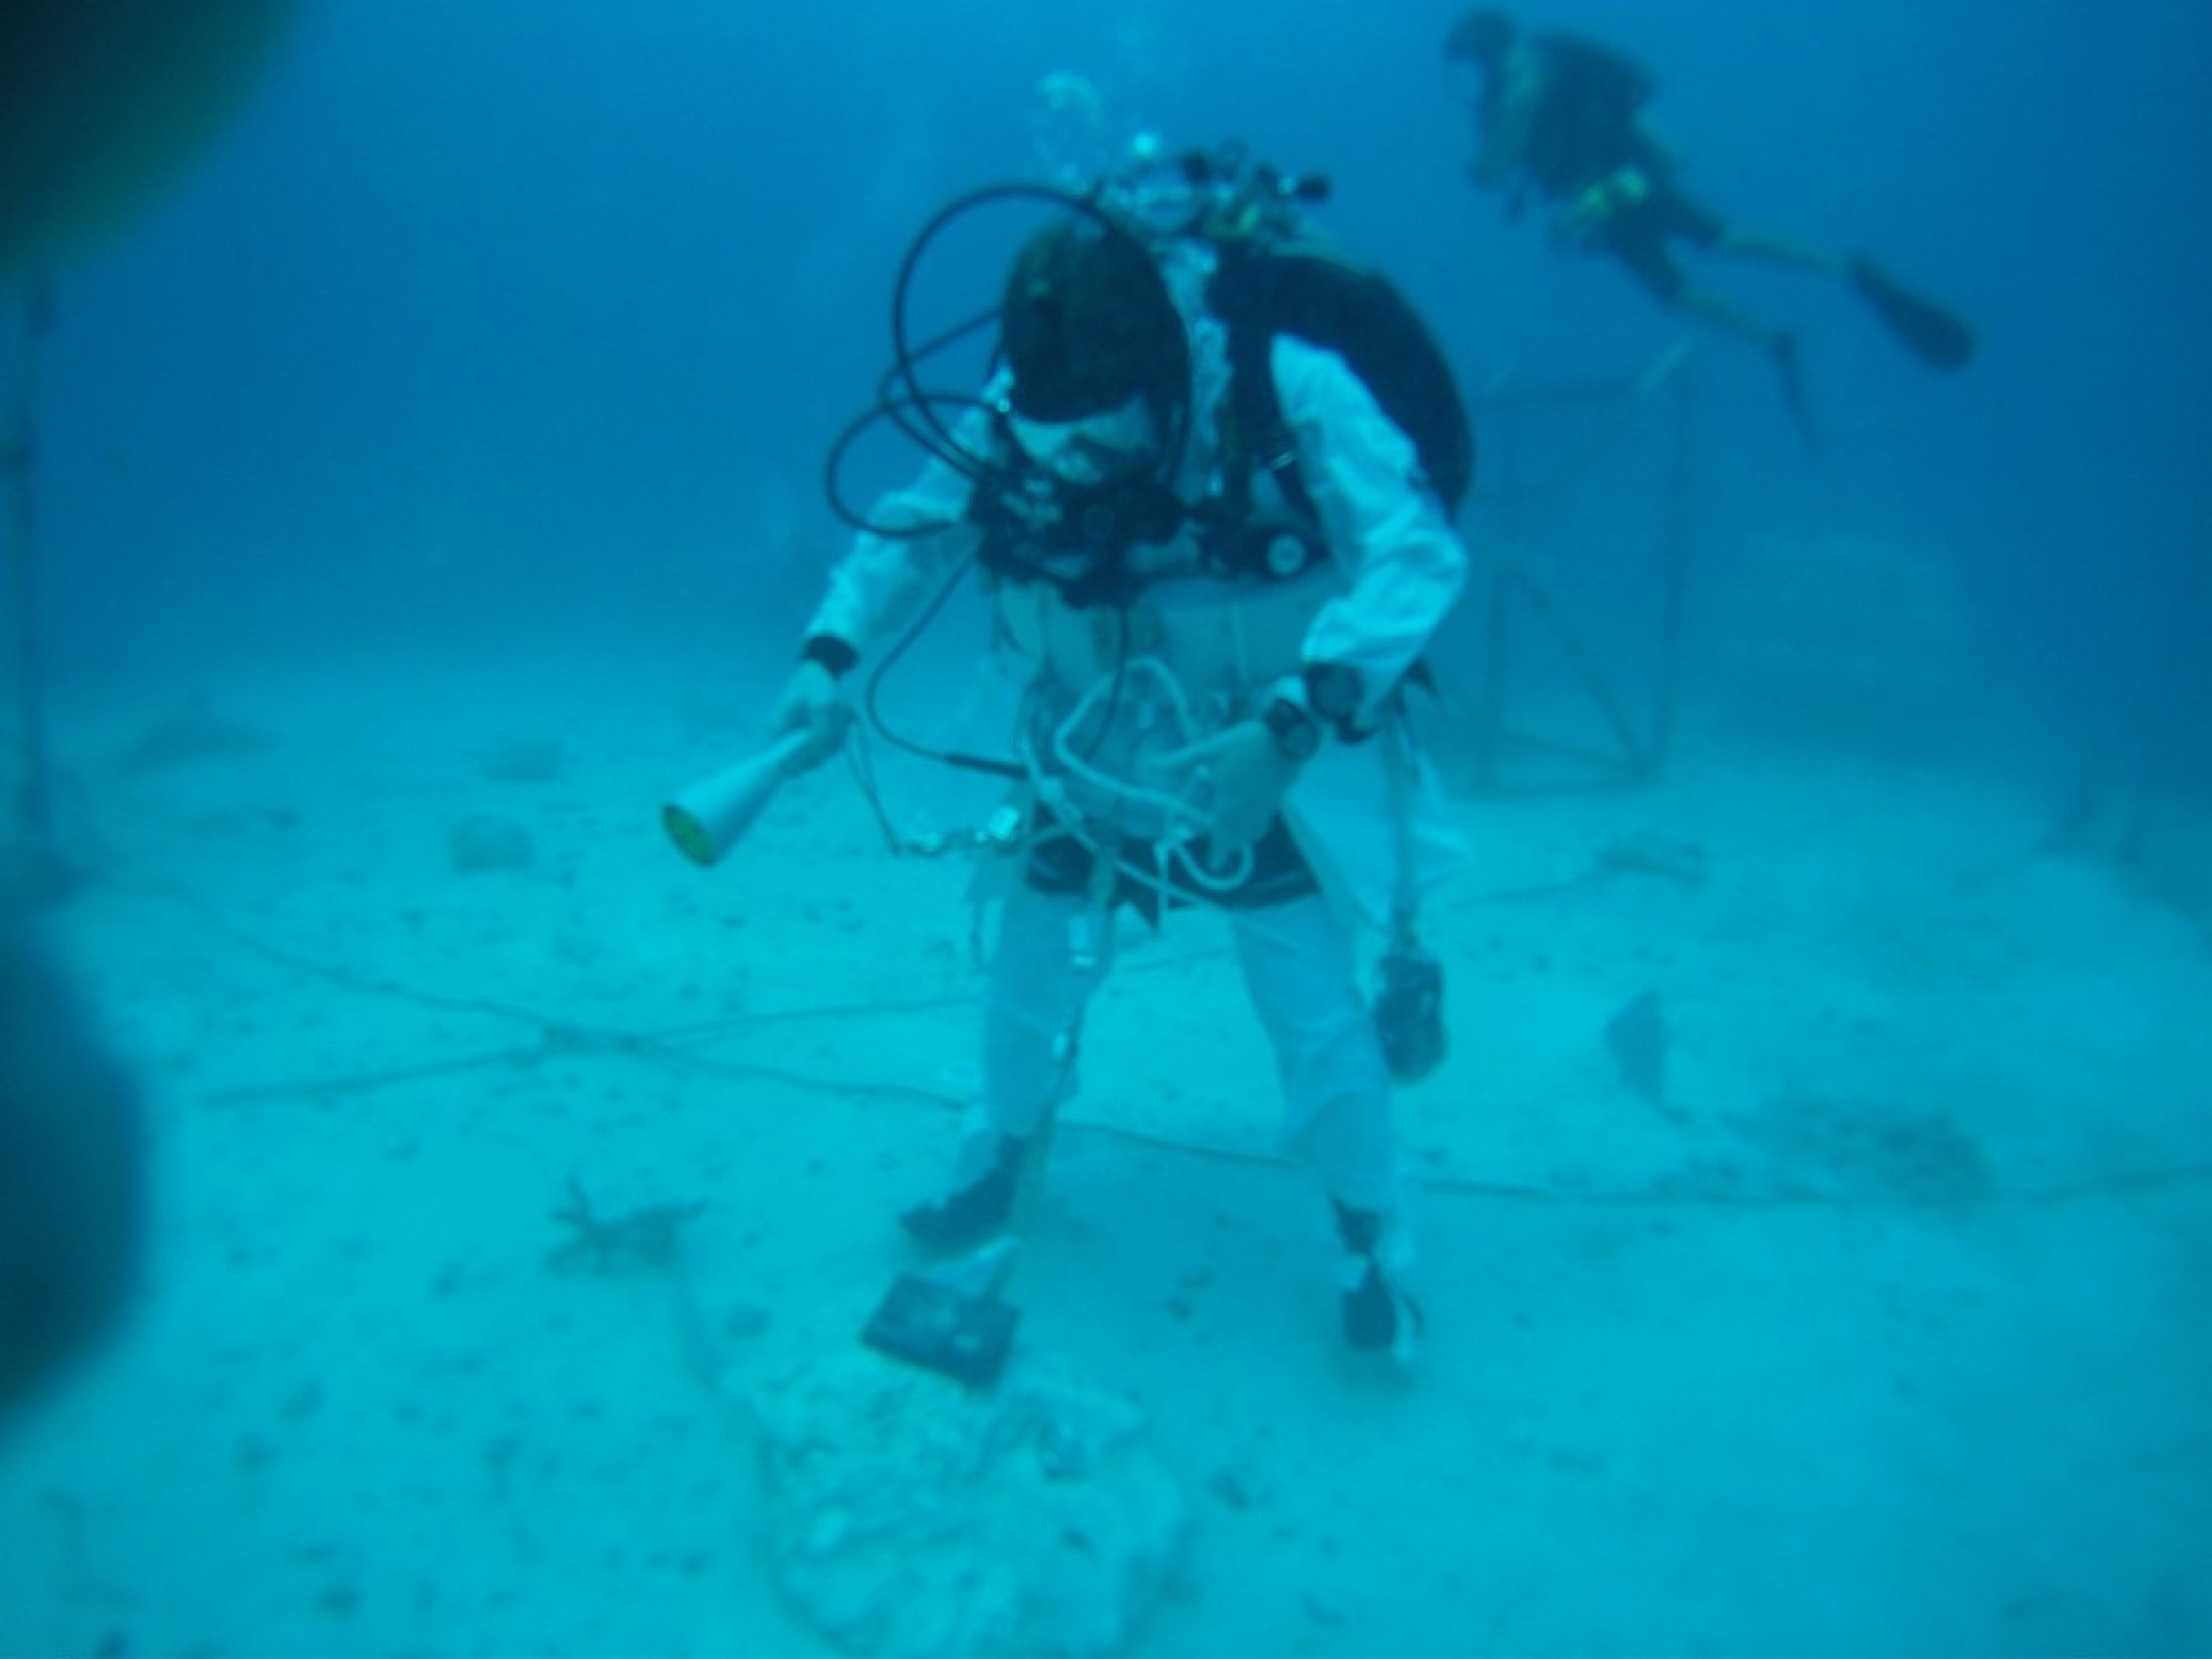 NEEMO engineering crew diver